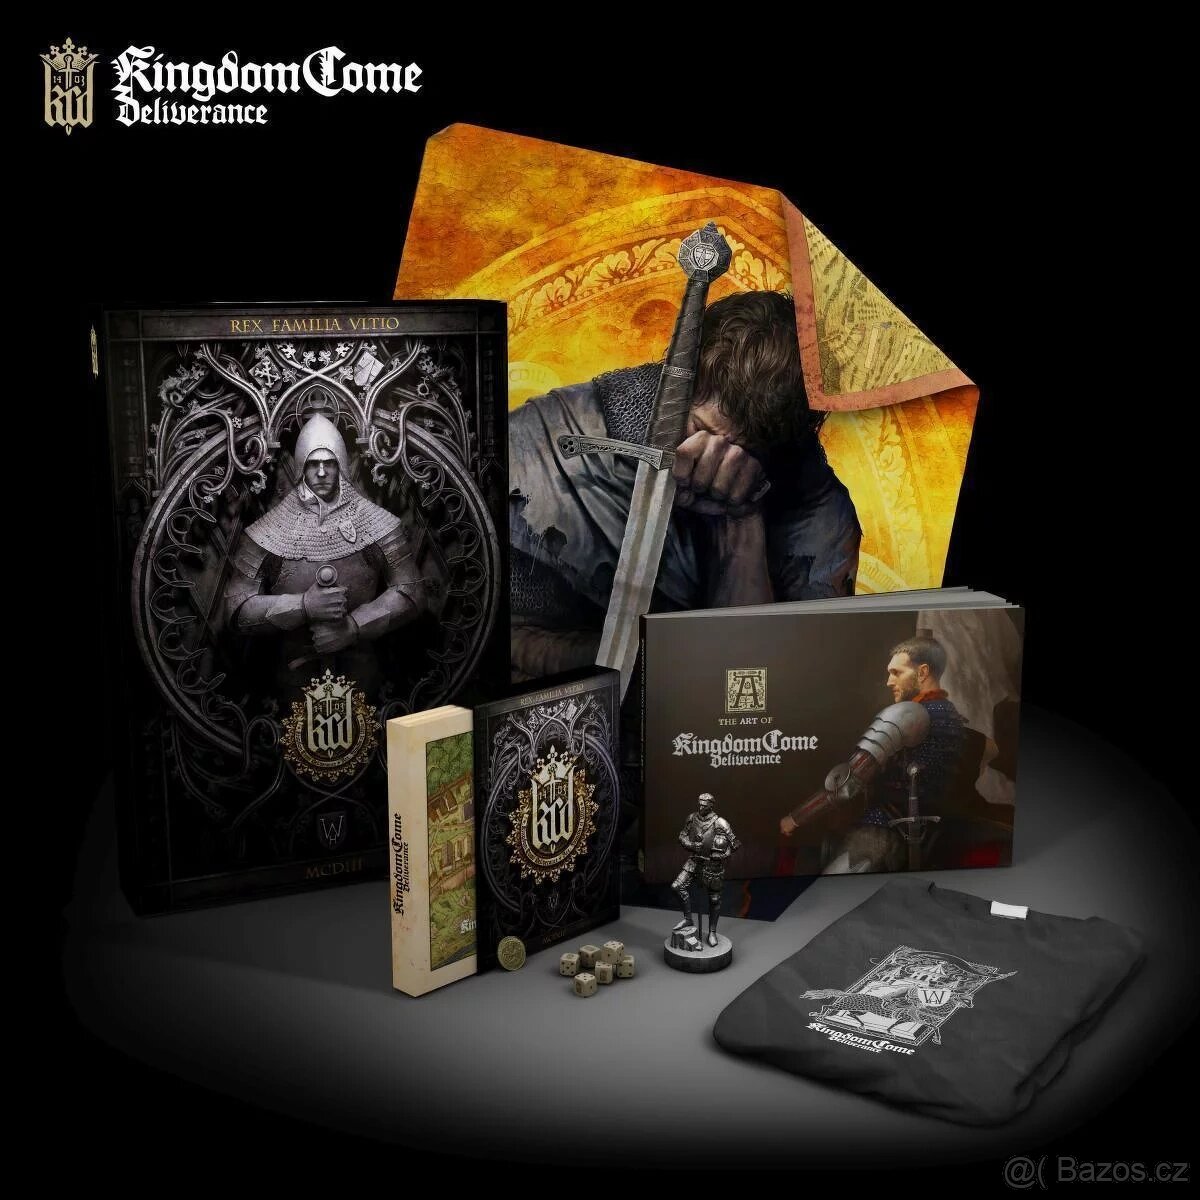 Kingdom come deliverance PC collectors edition